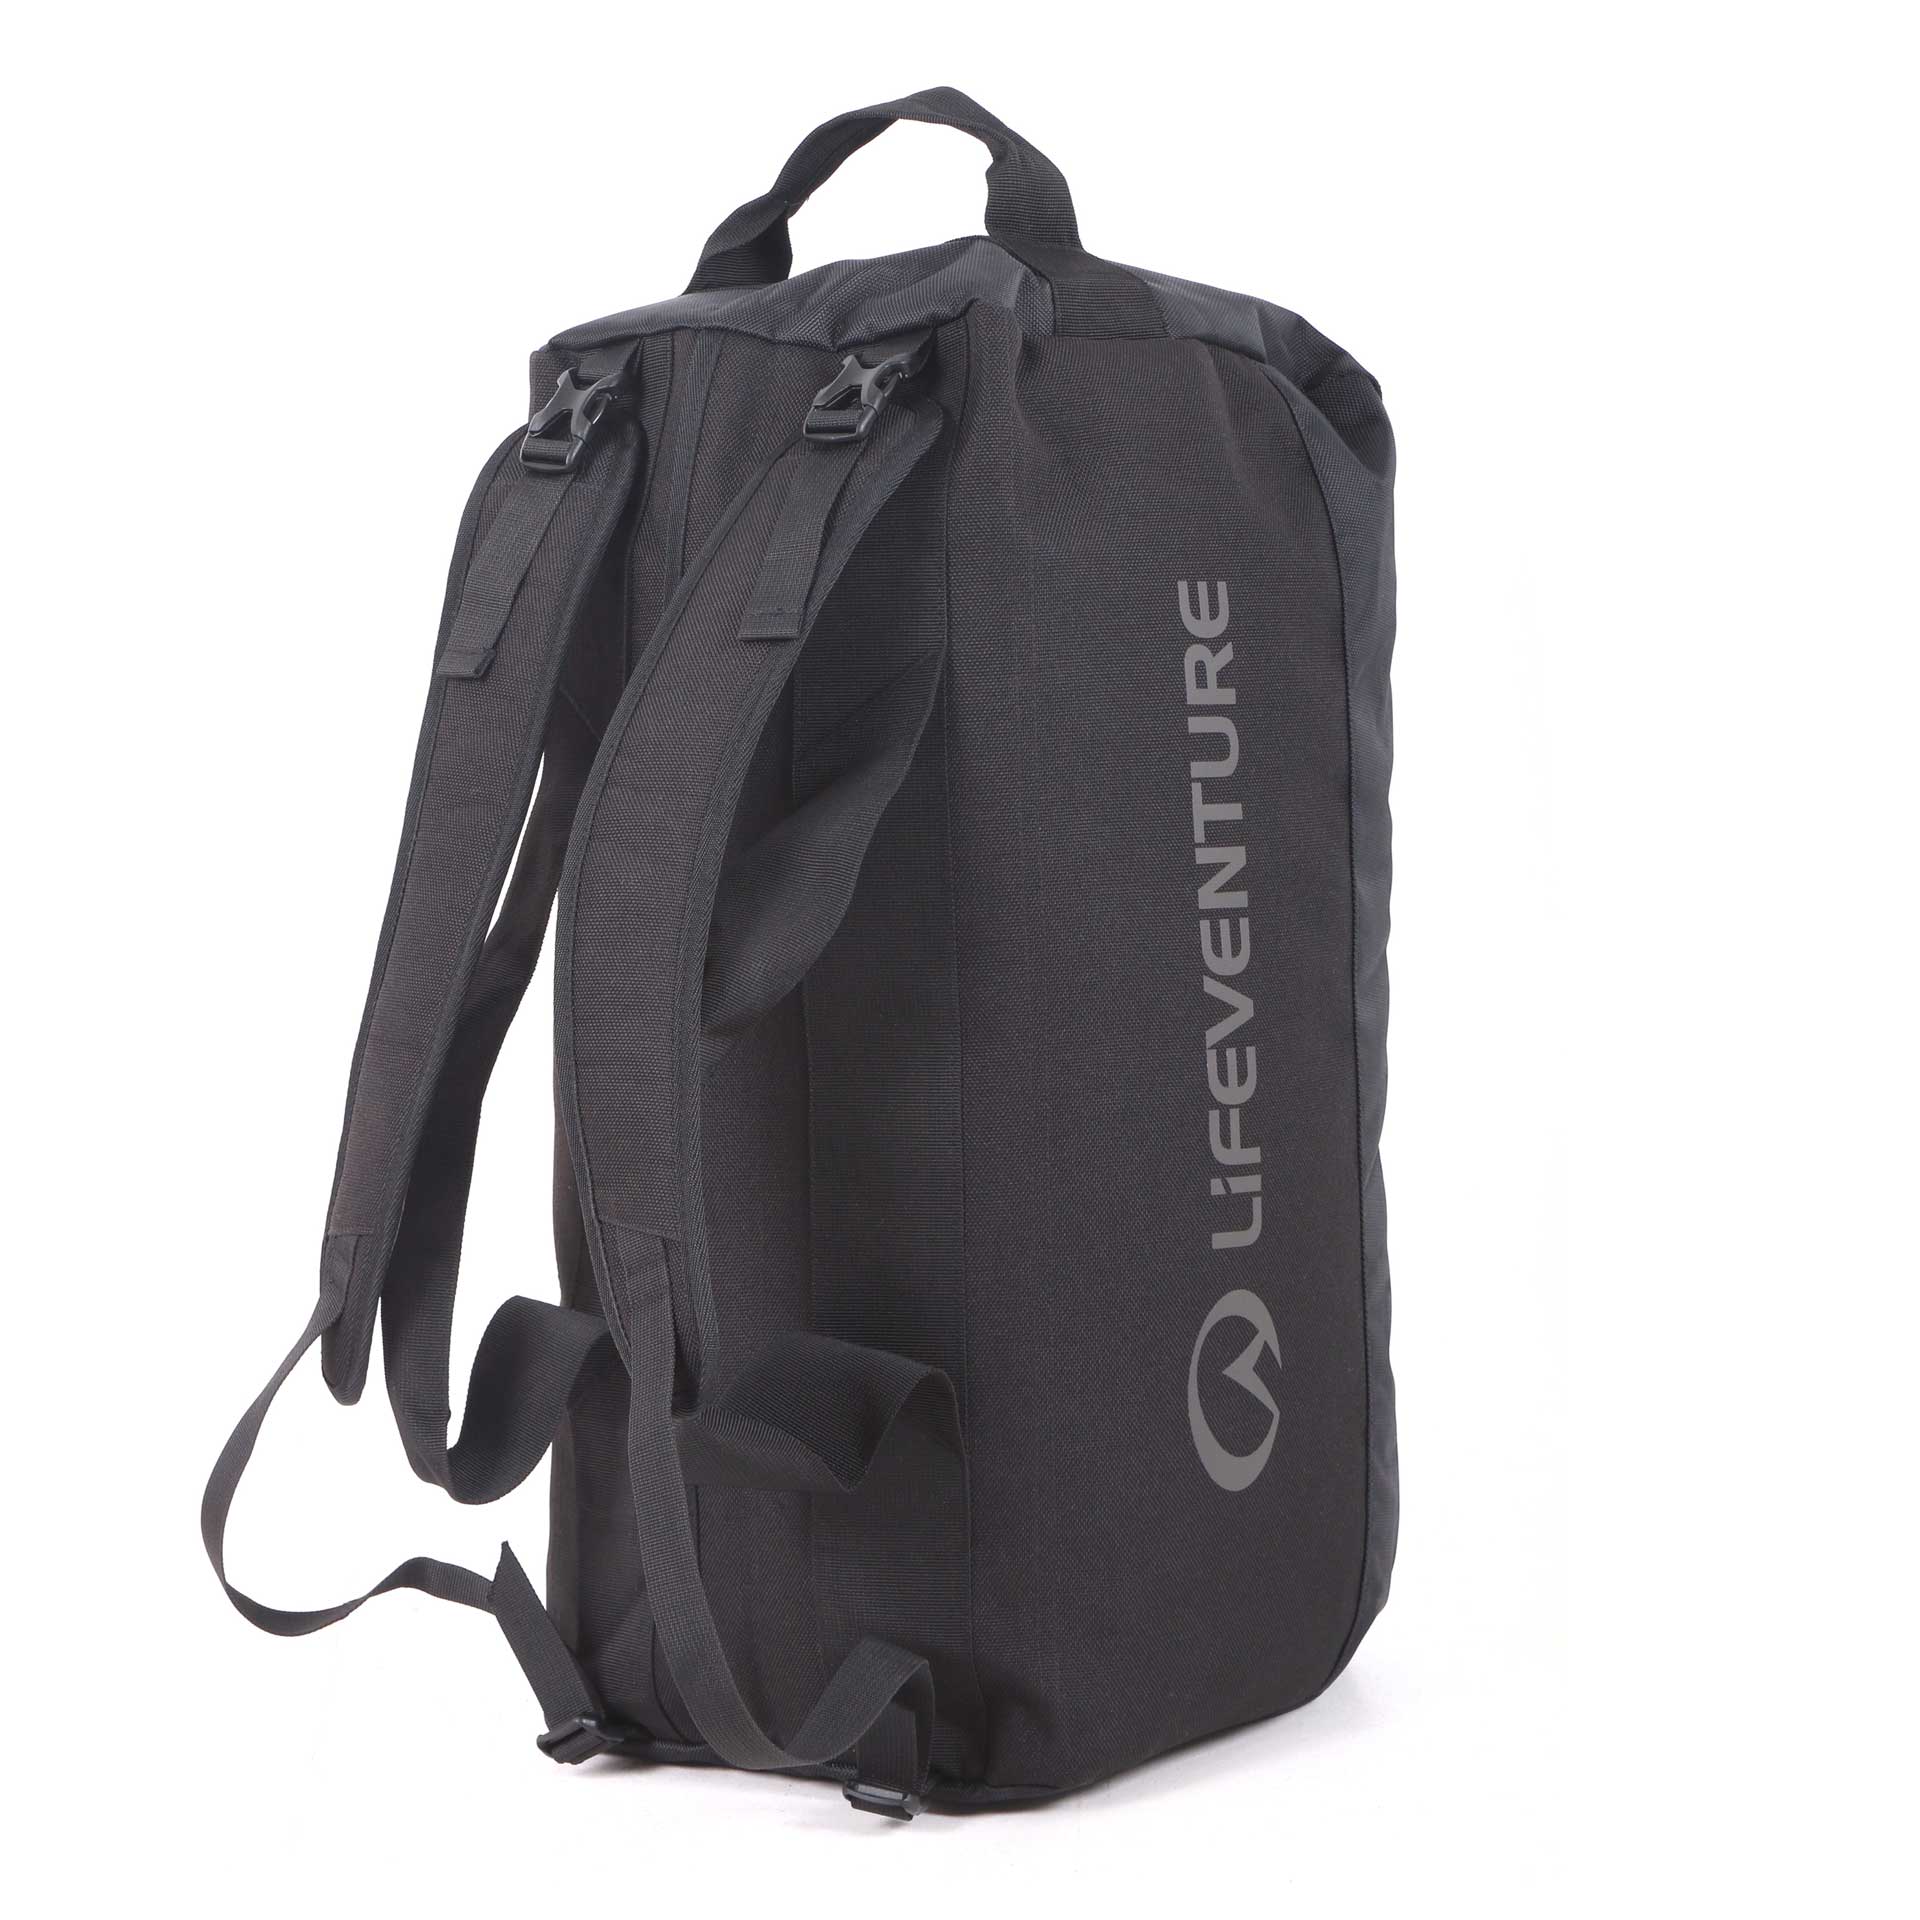 Expedition Cargo Duffle Bag | 50 Litre Duffle Bag | Lifeventure